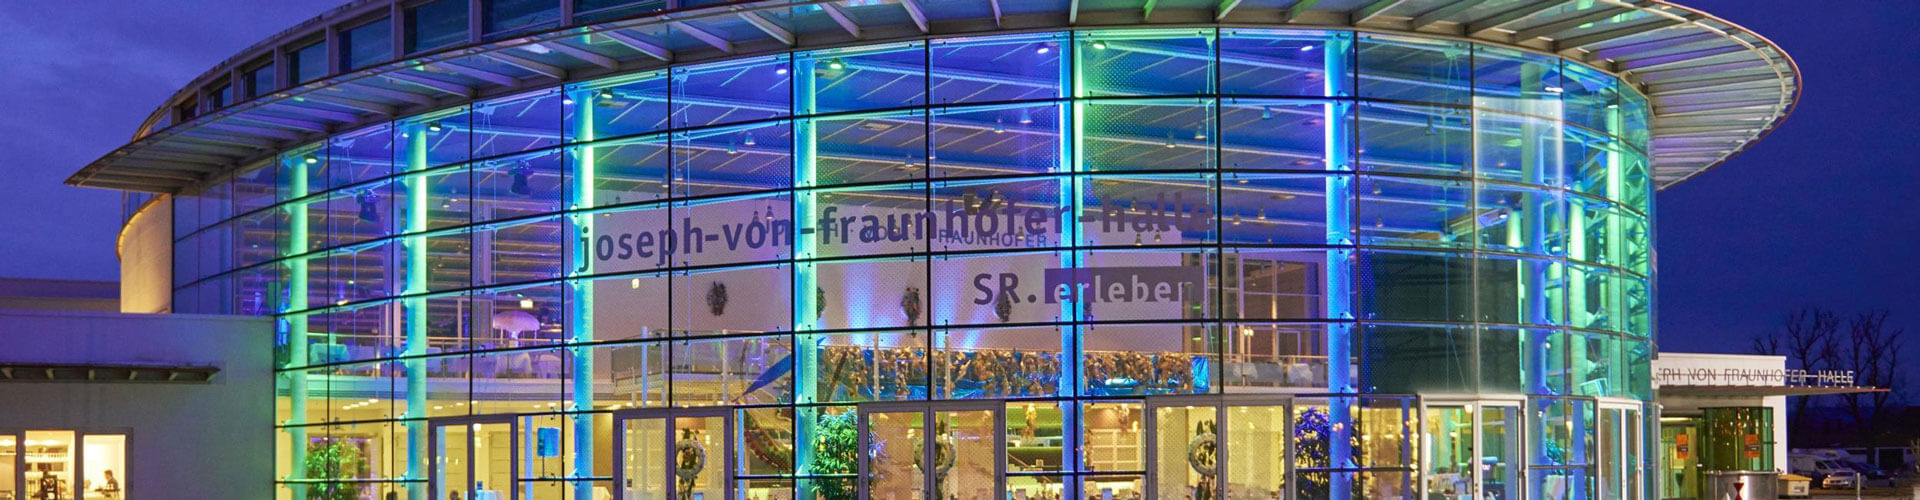 Die Joseph-von-Fraunhofer-Halle von aussen, bei Nacht